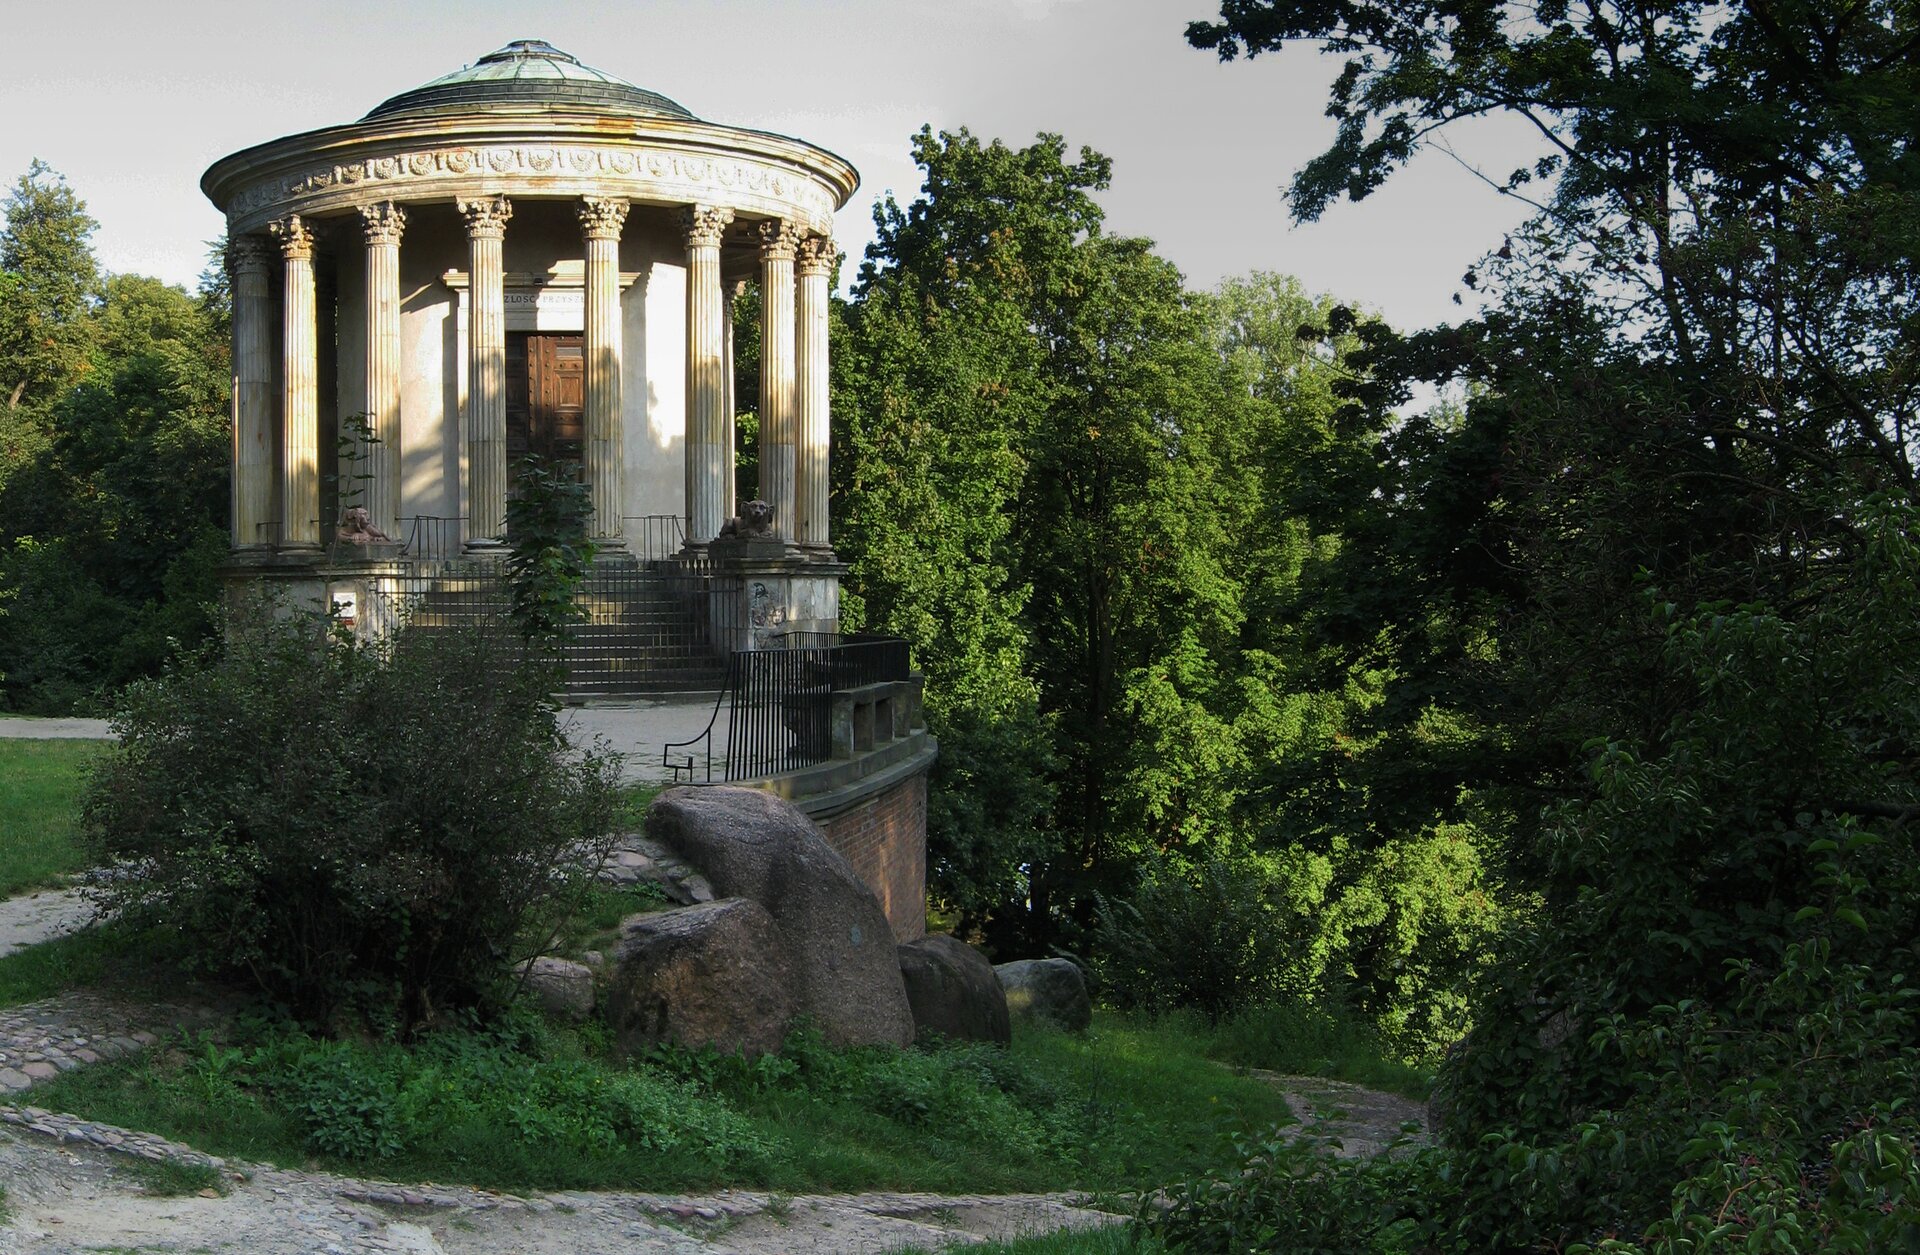 Świątynia Sybilli w Puławach Świątynia Sybilli w Puławach Źródło: Lukke (fot.) , Chrystian Piotr Aigner, 1798–1801, licencja: CC BY 3.0.